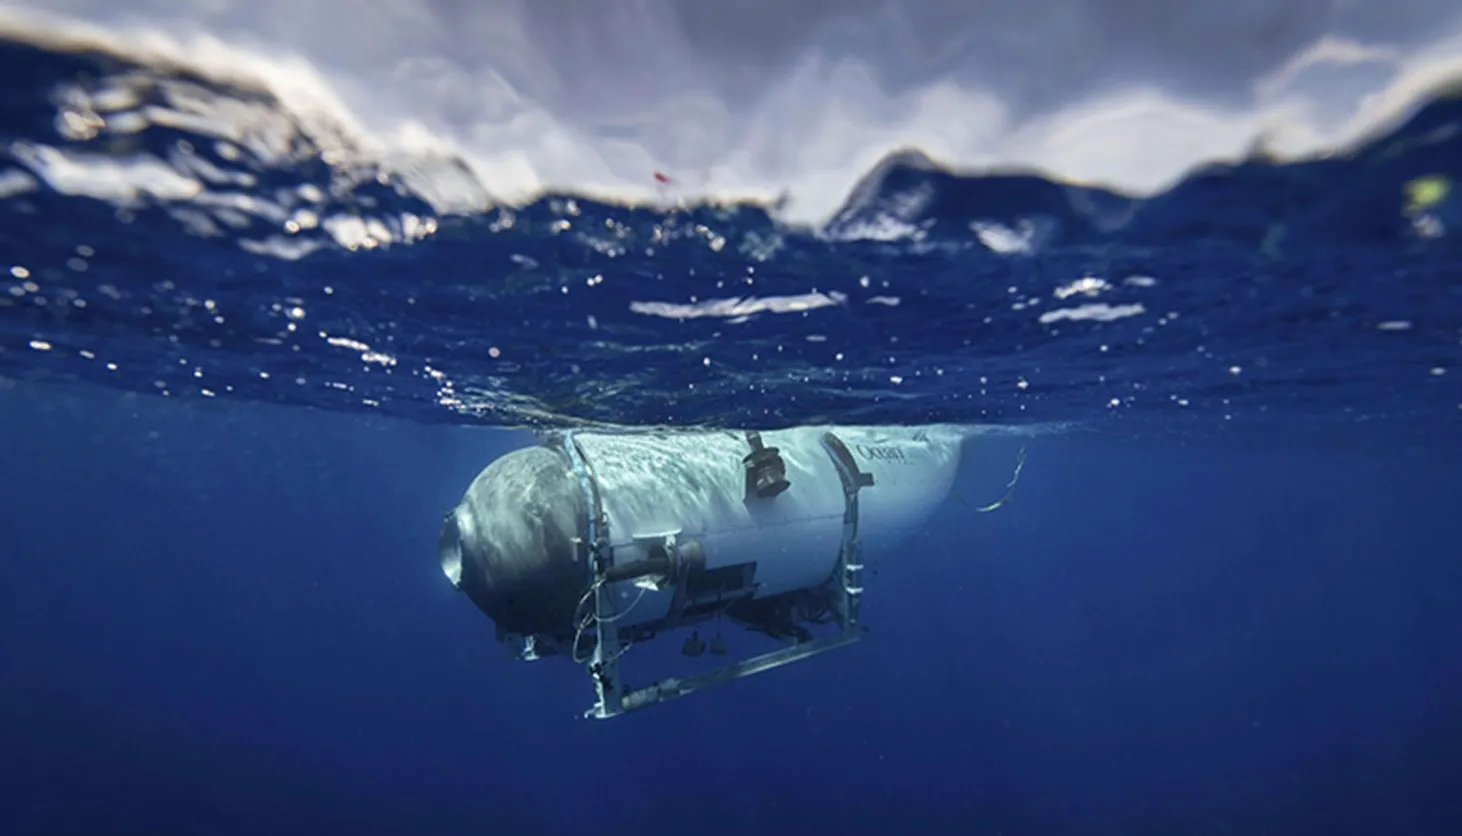 Το προειδοποιητικό μήνυμα υπαλλήλου της OceanGate για το Titan: «Το υποβρύχιο είναι ένα ατύχημα που δεν έχει ακόμα συμβεί»